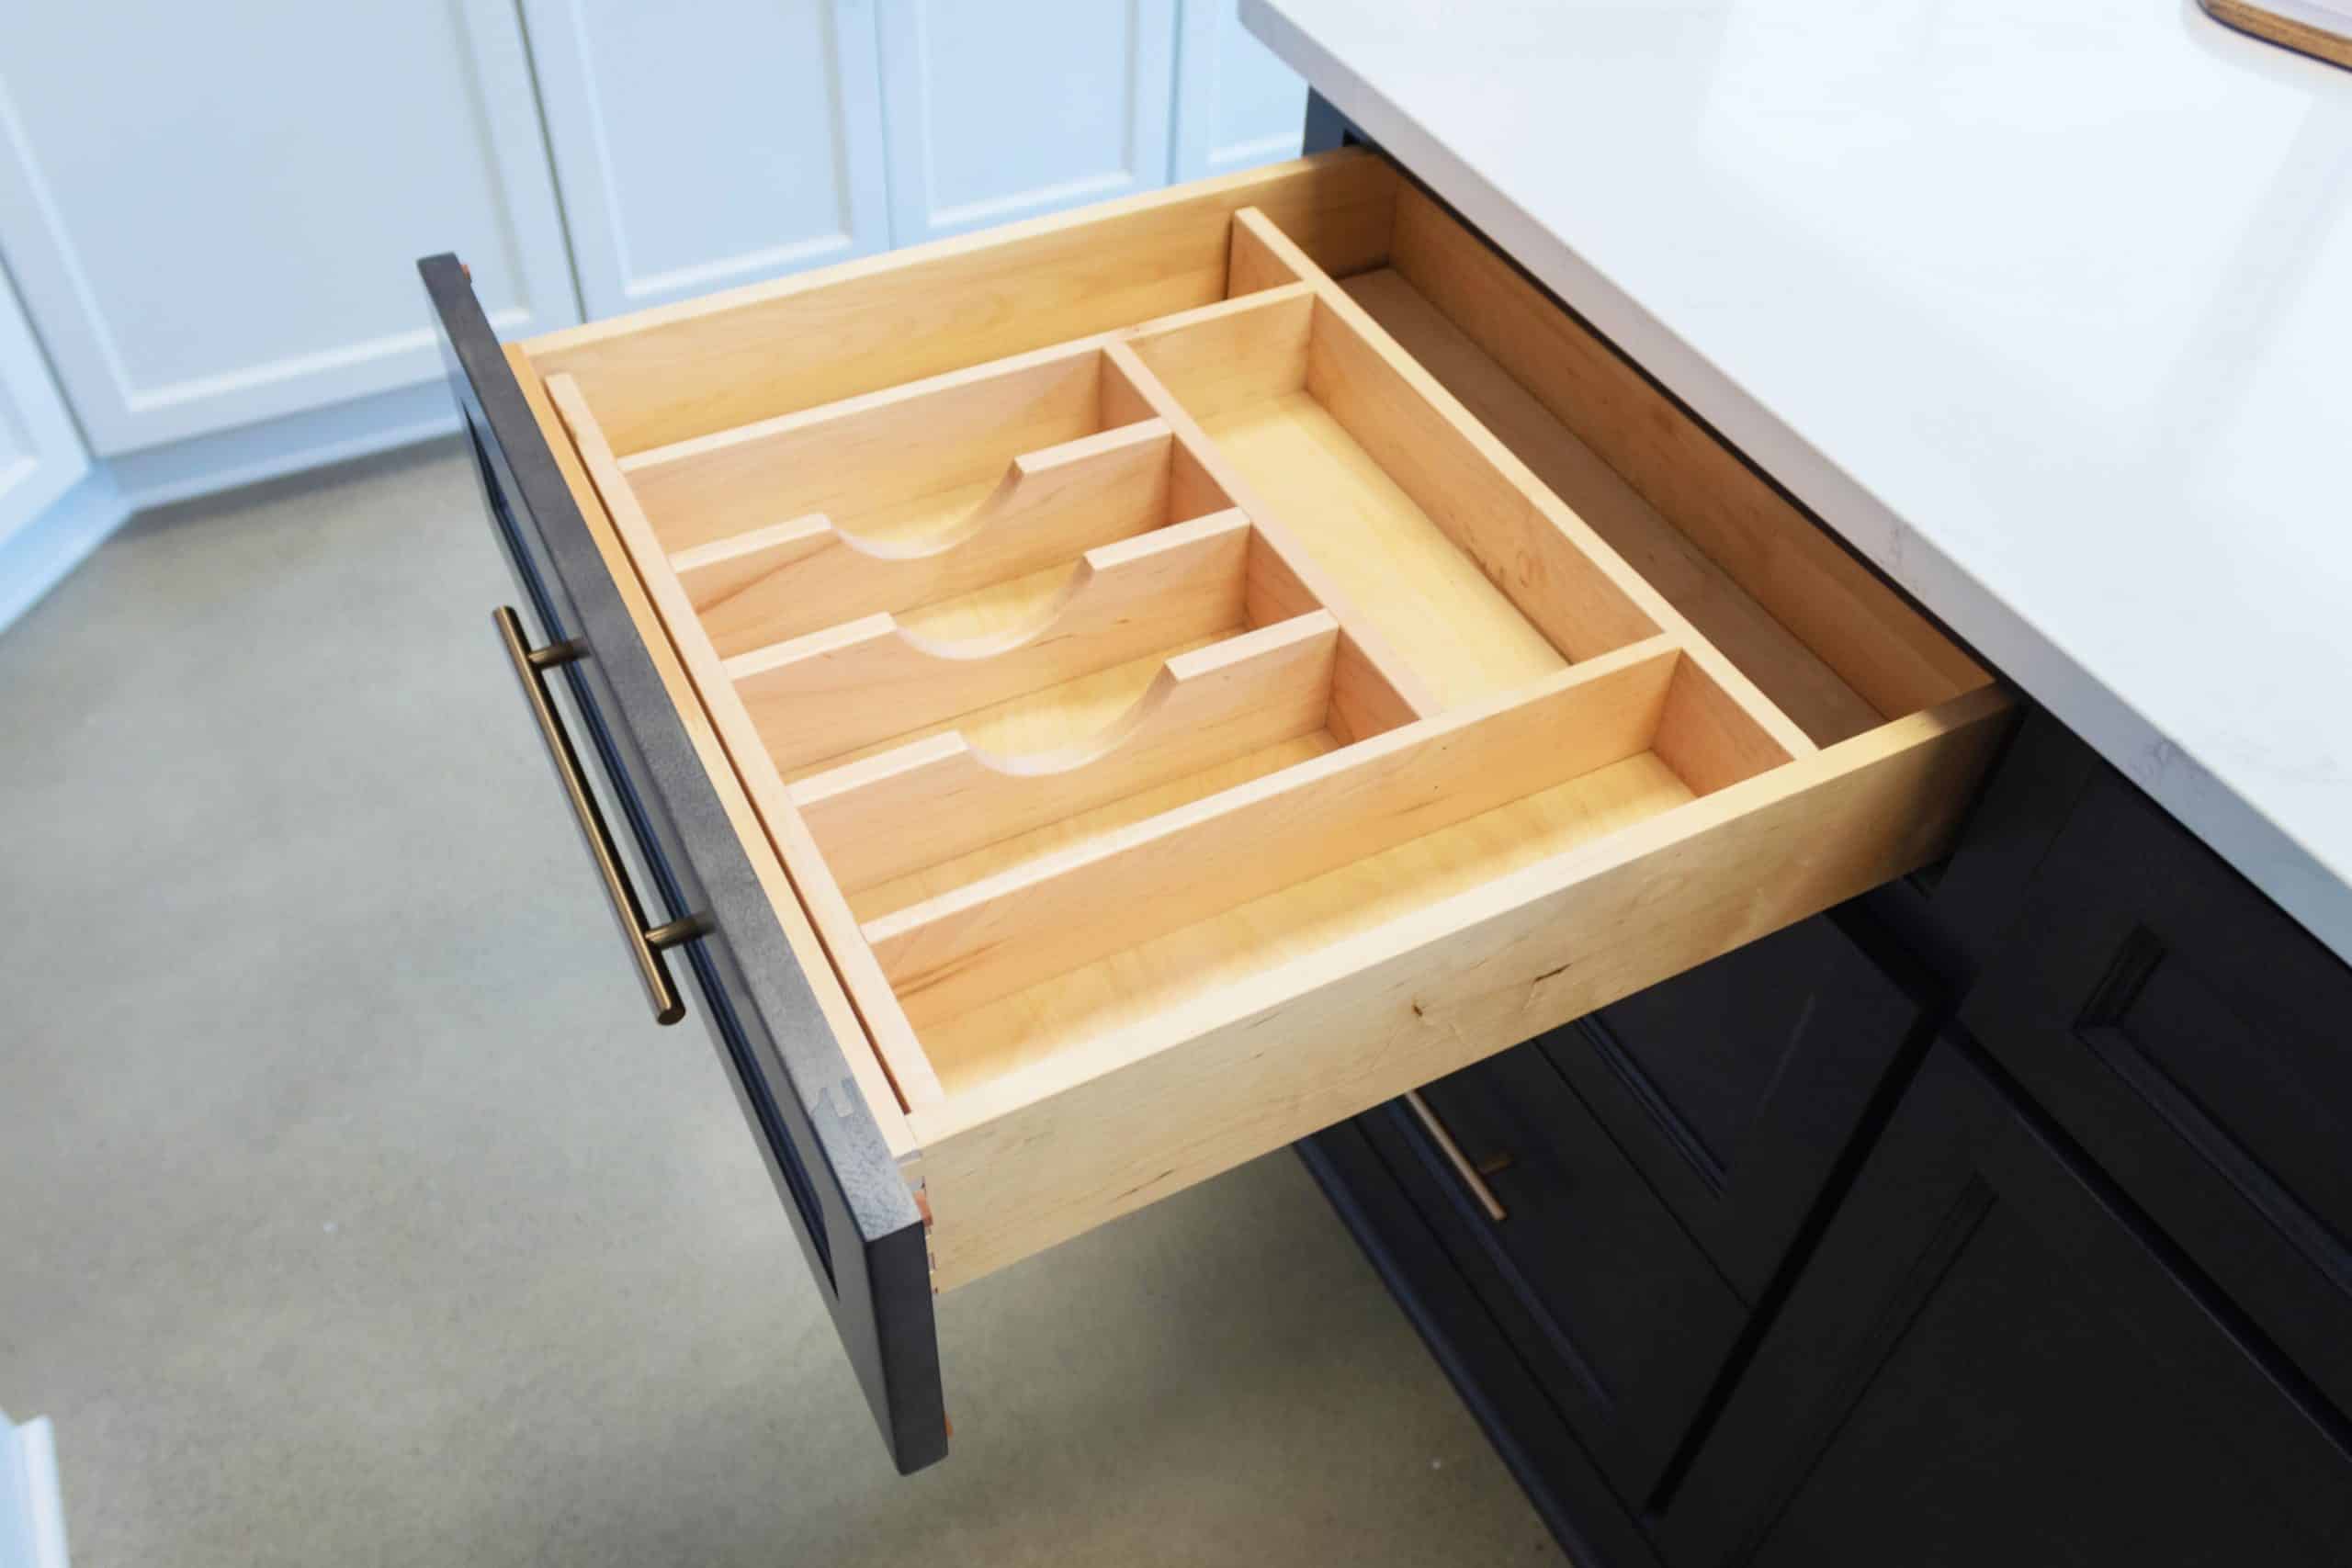 wooden dividers for kitchen storage